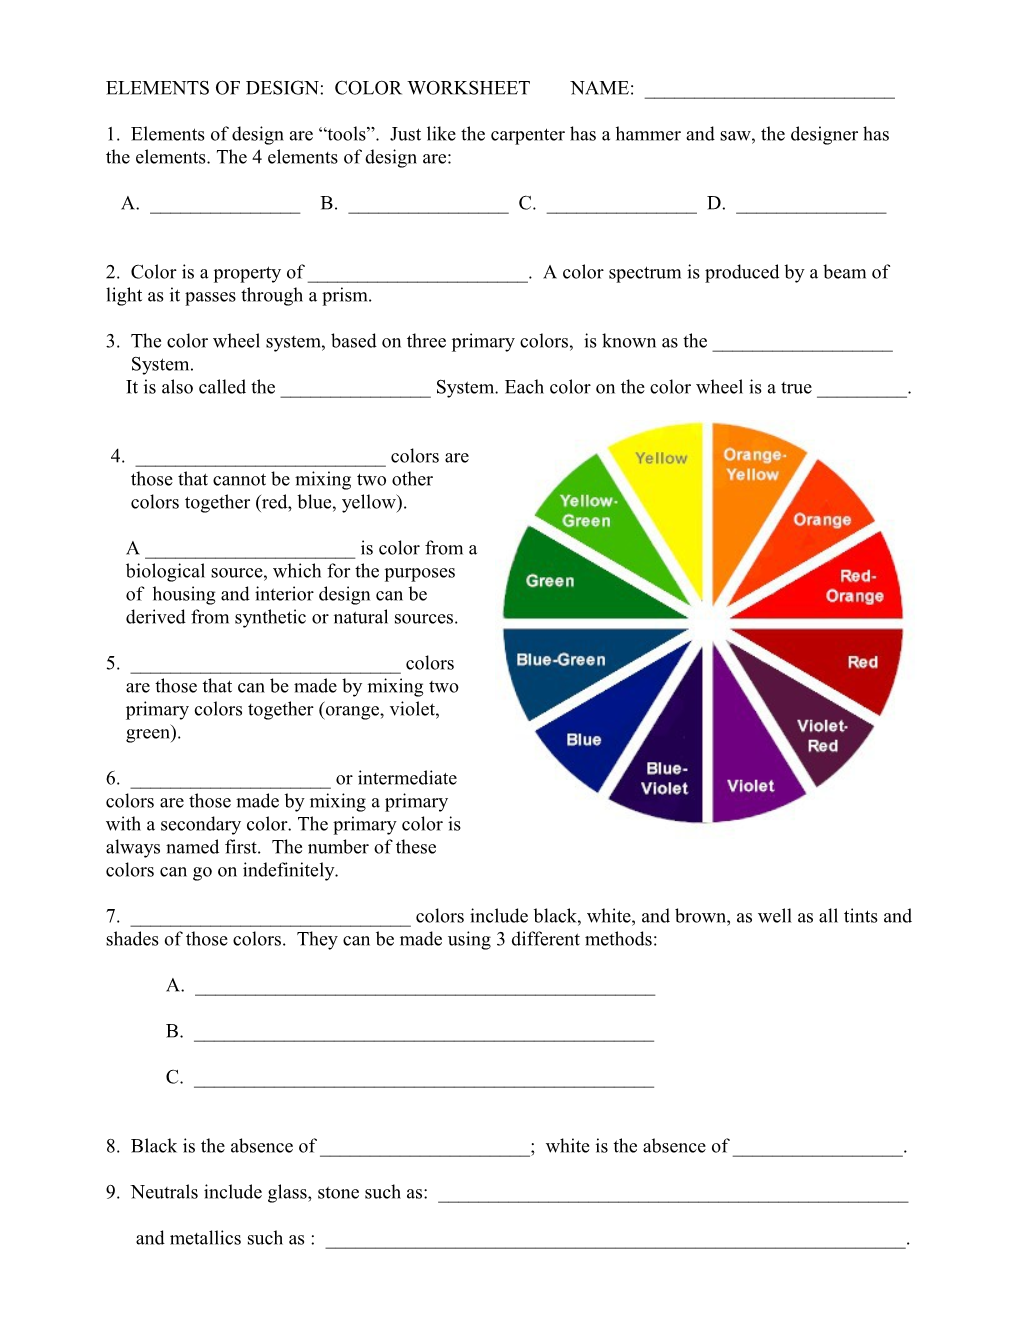 Elements of Design: Color Worksheet Name: ______